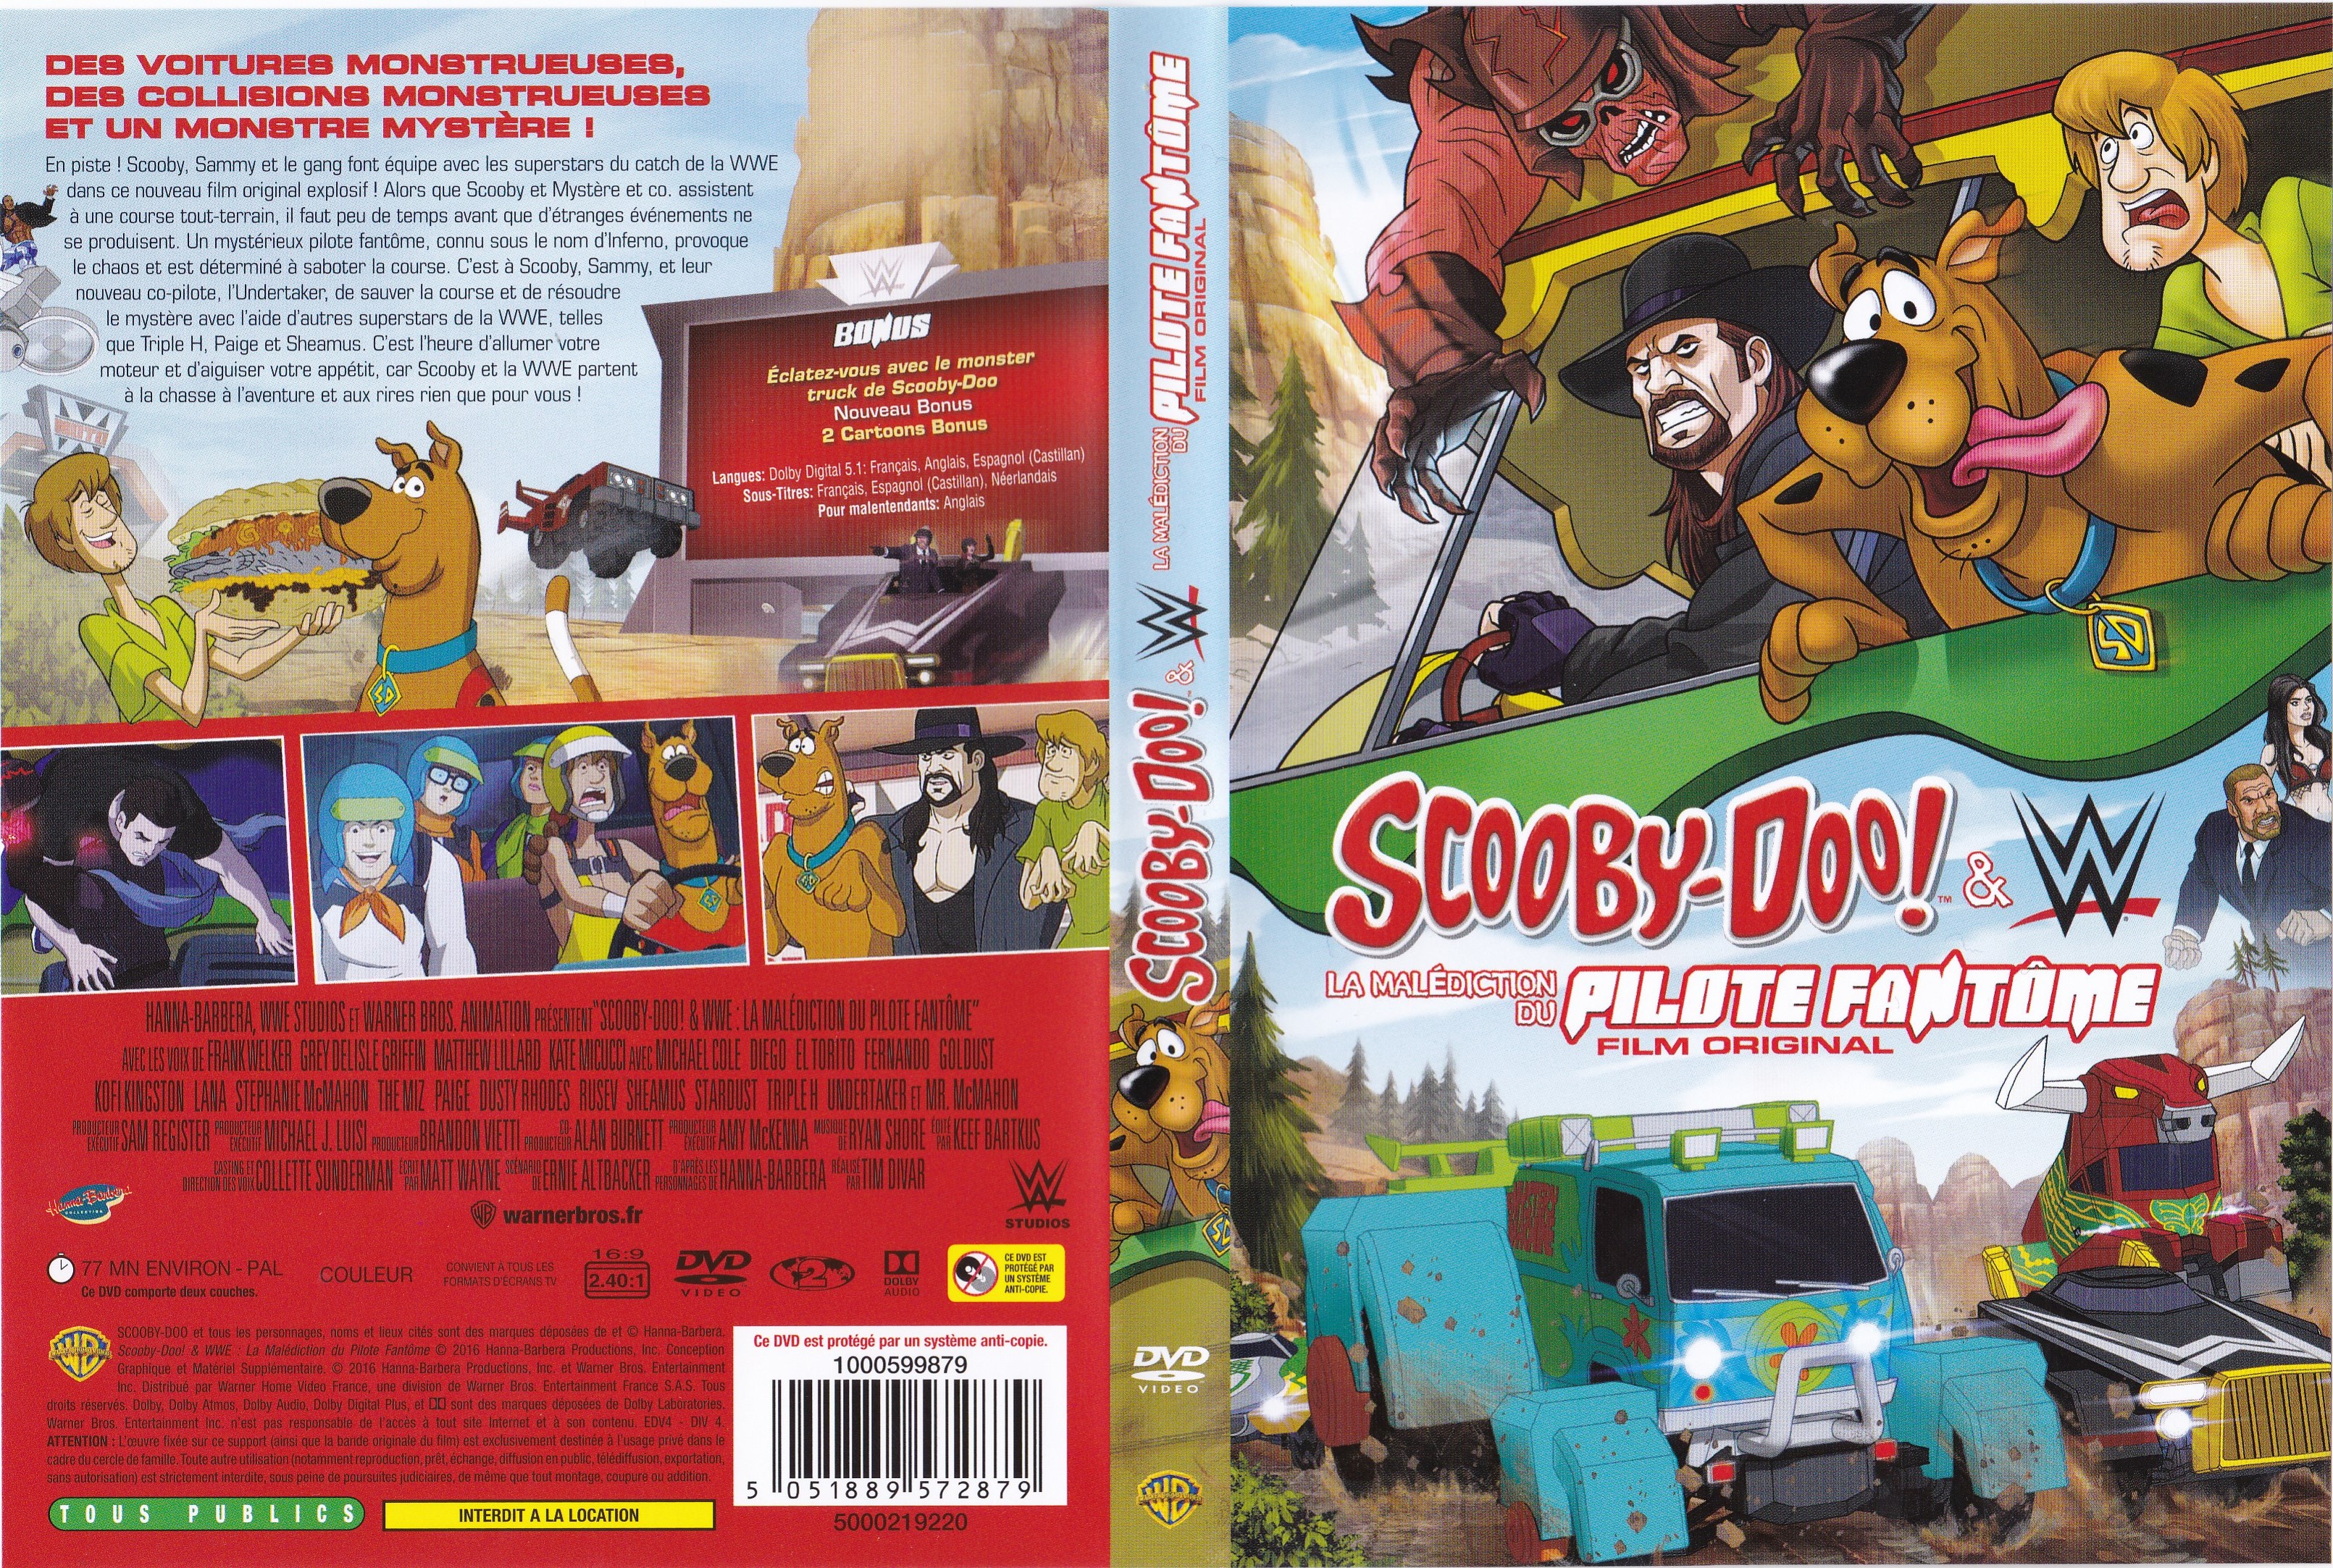 Jaquette DVD Scooby-Doo! La Malediction du Pilote Fantome